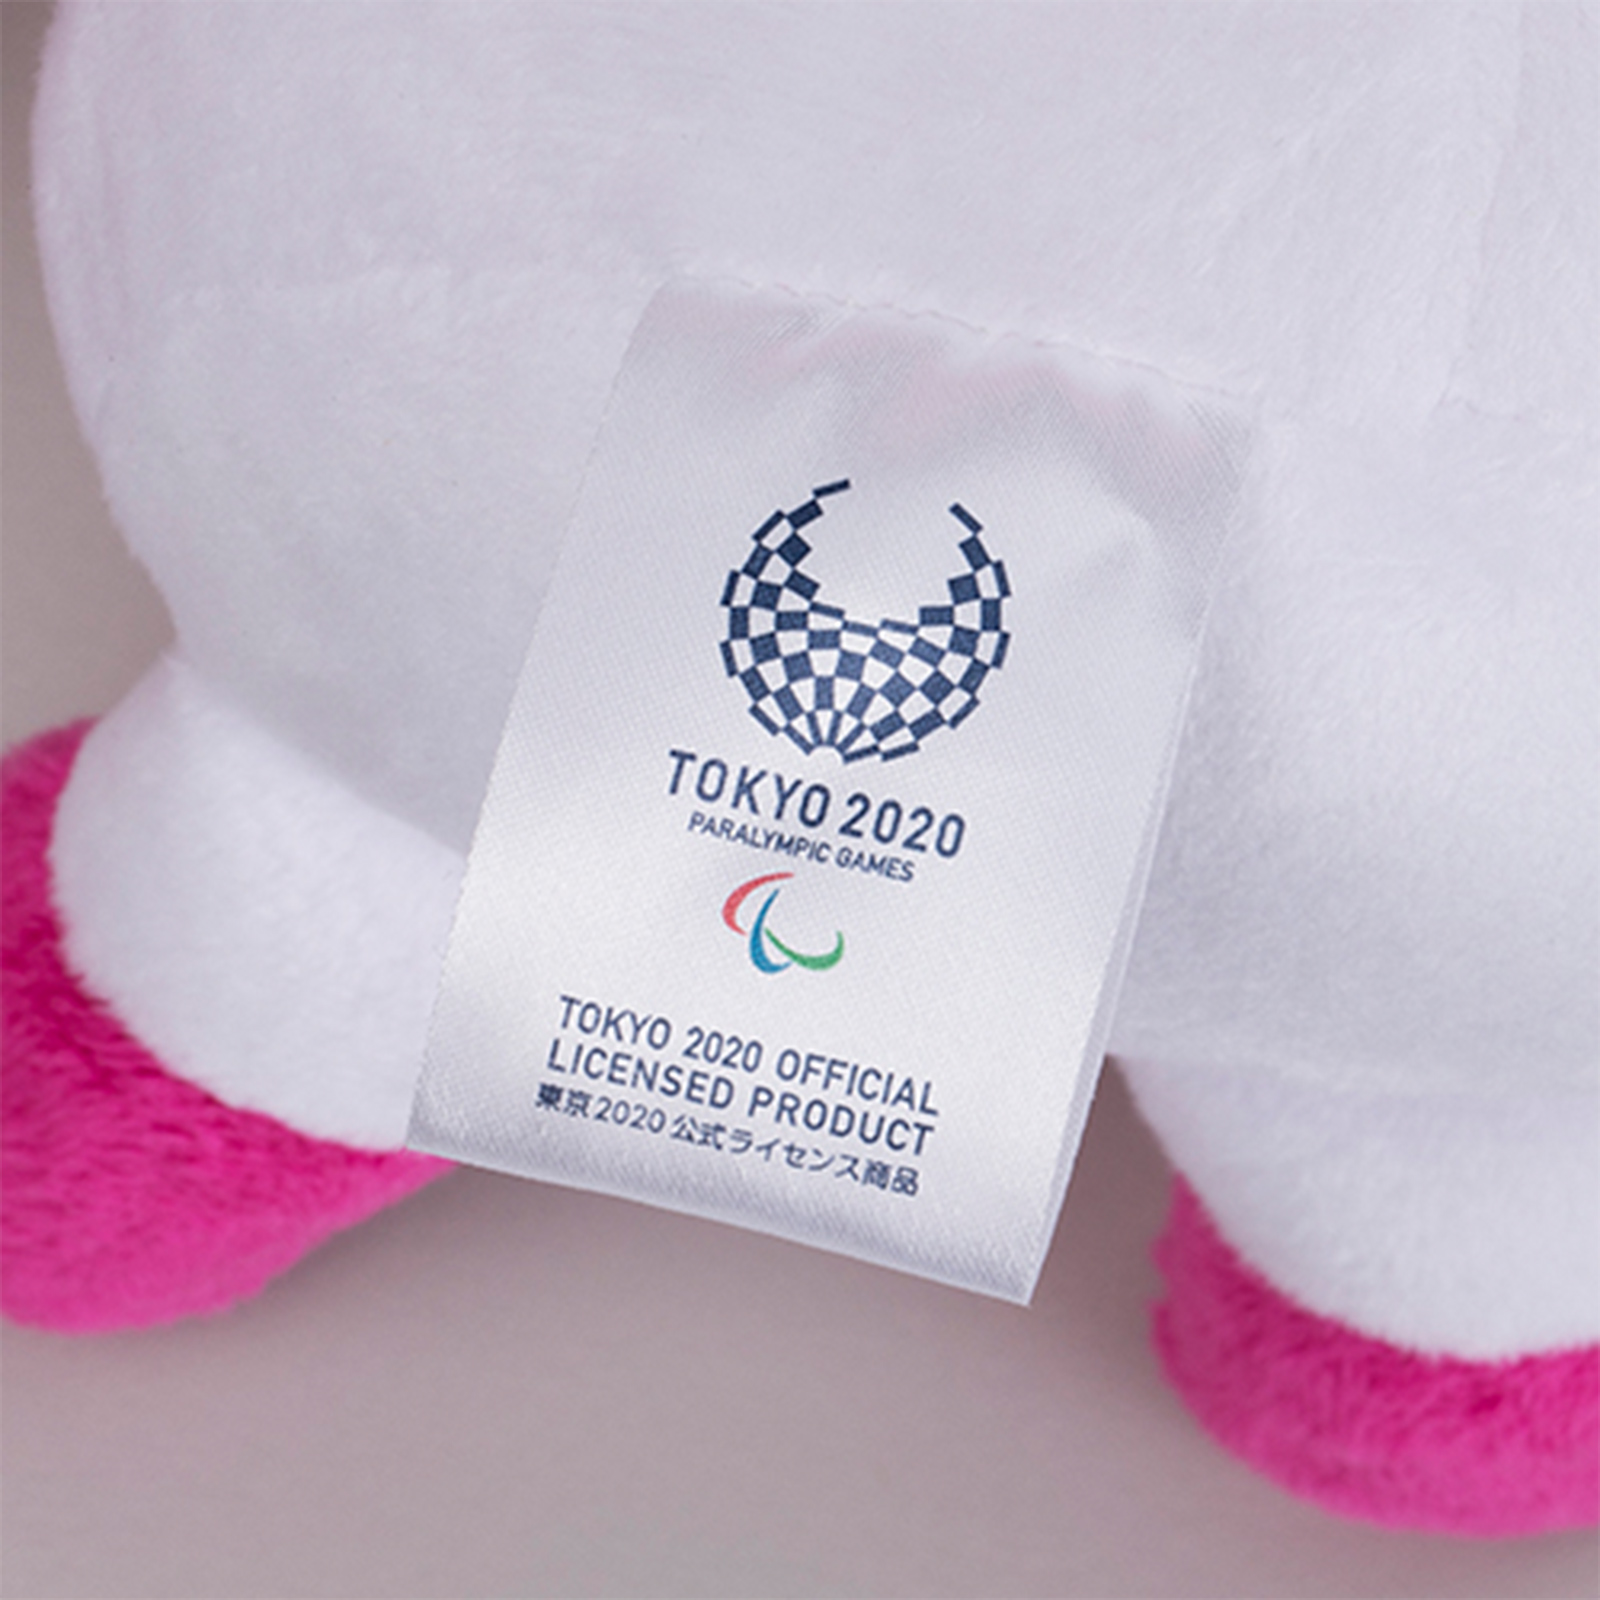 東京2020 パラリンピックマスコット ソメイティ ぬいぐるみ L 商品画像09